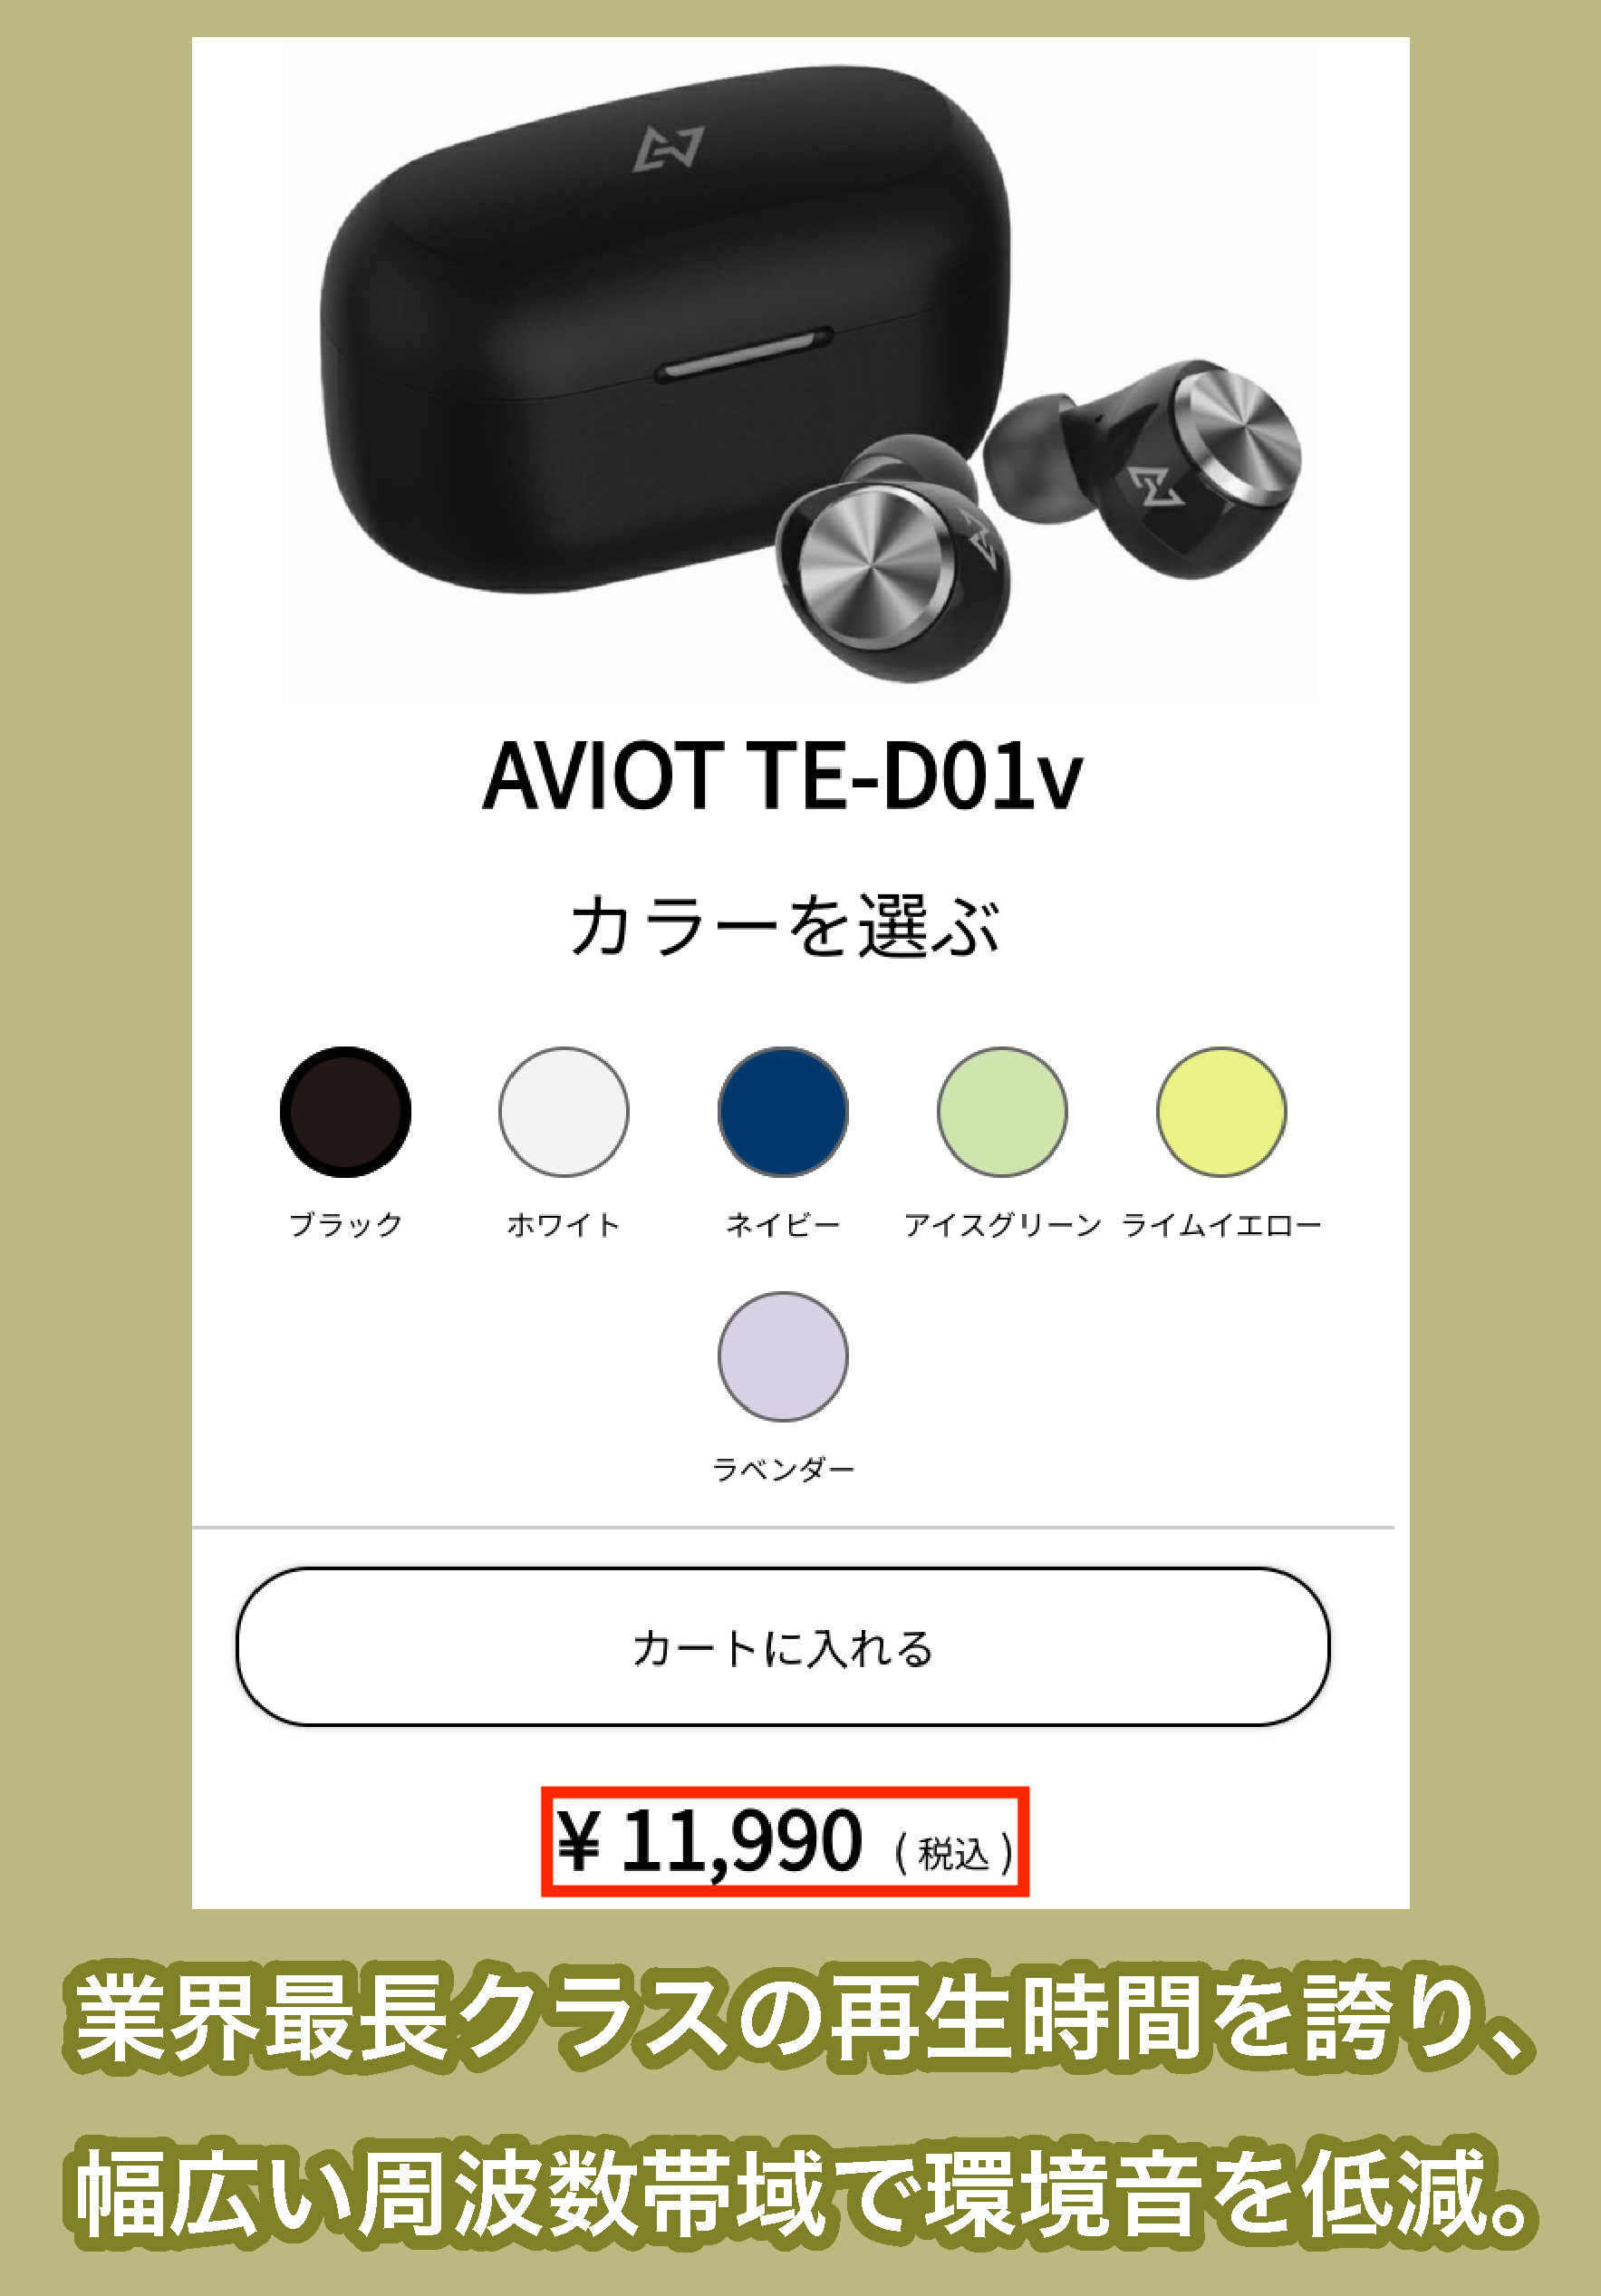 AVIOT TE-D01vの価格